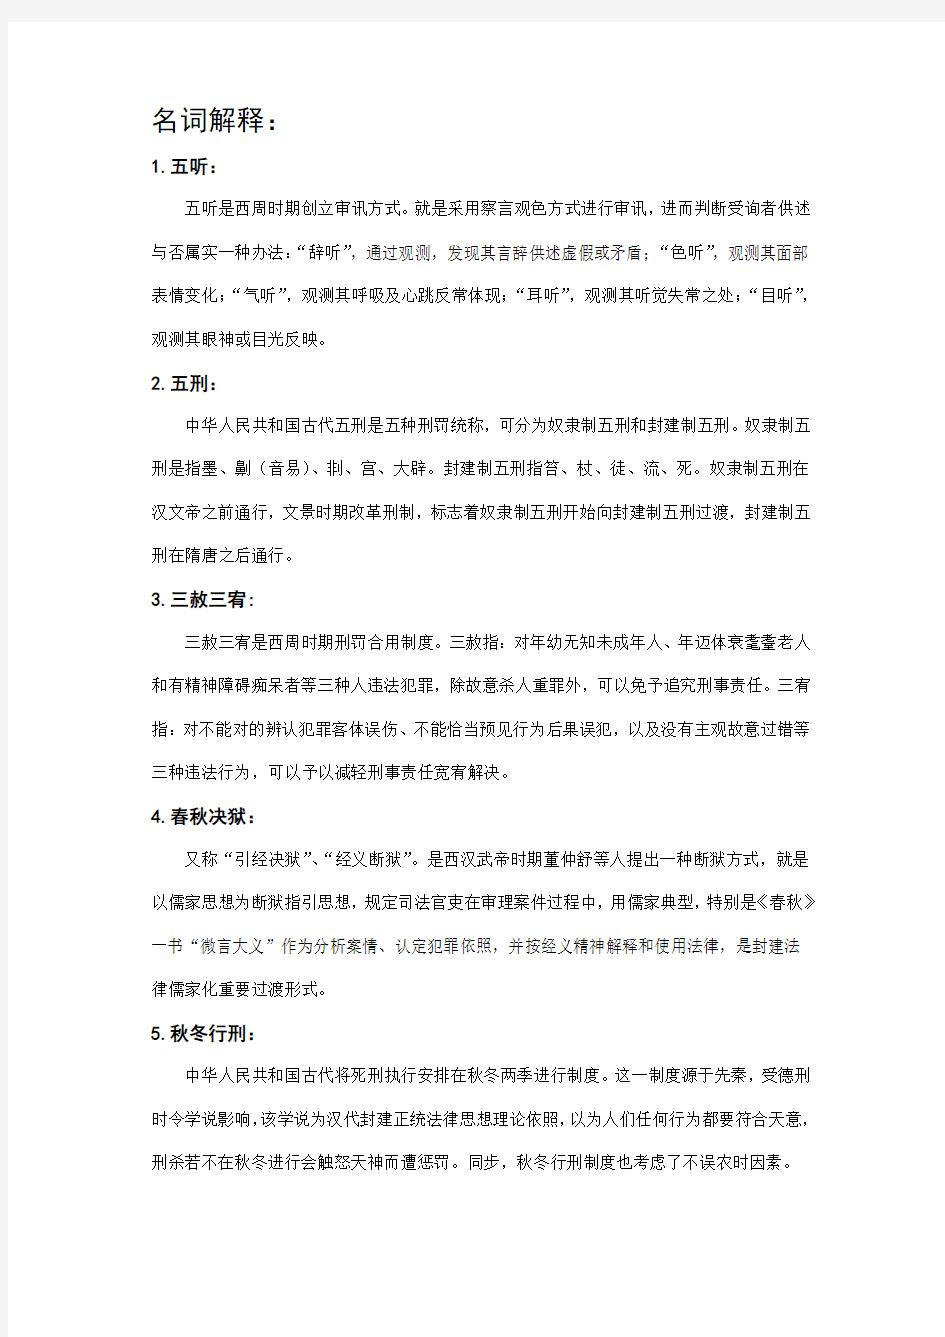 2021年中国法制史部分名词解释简答论述新版